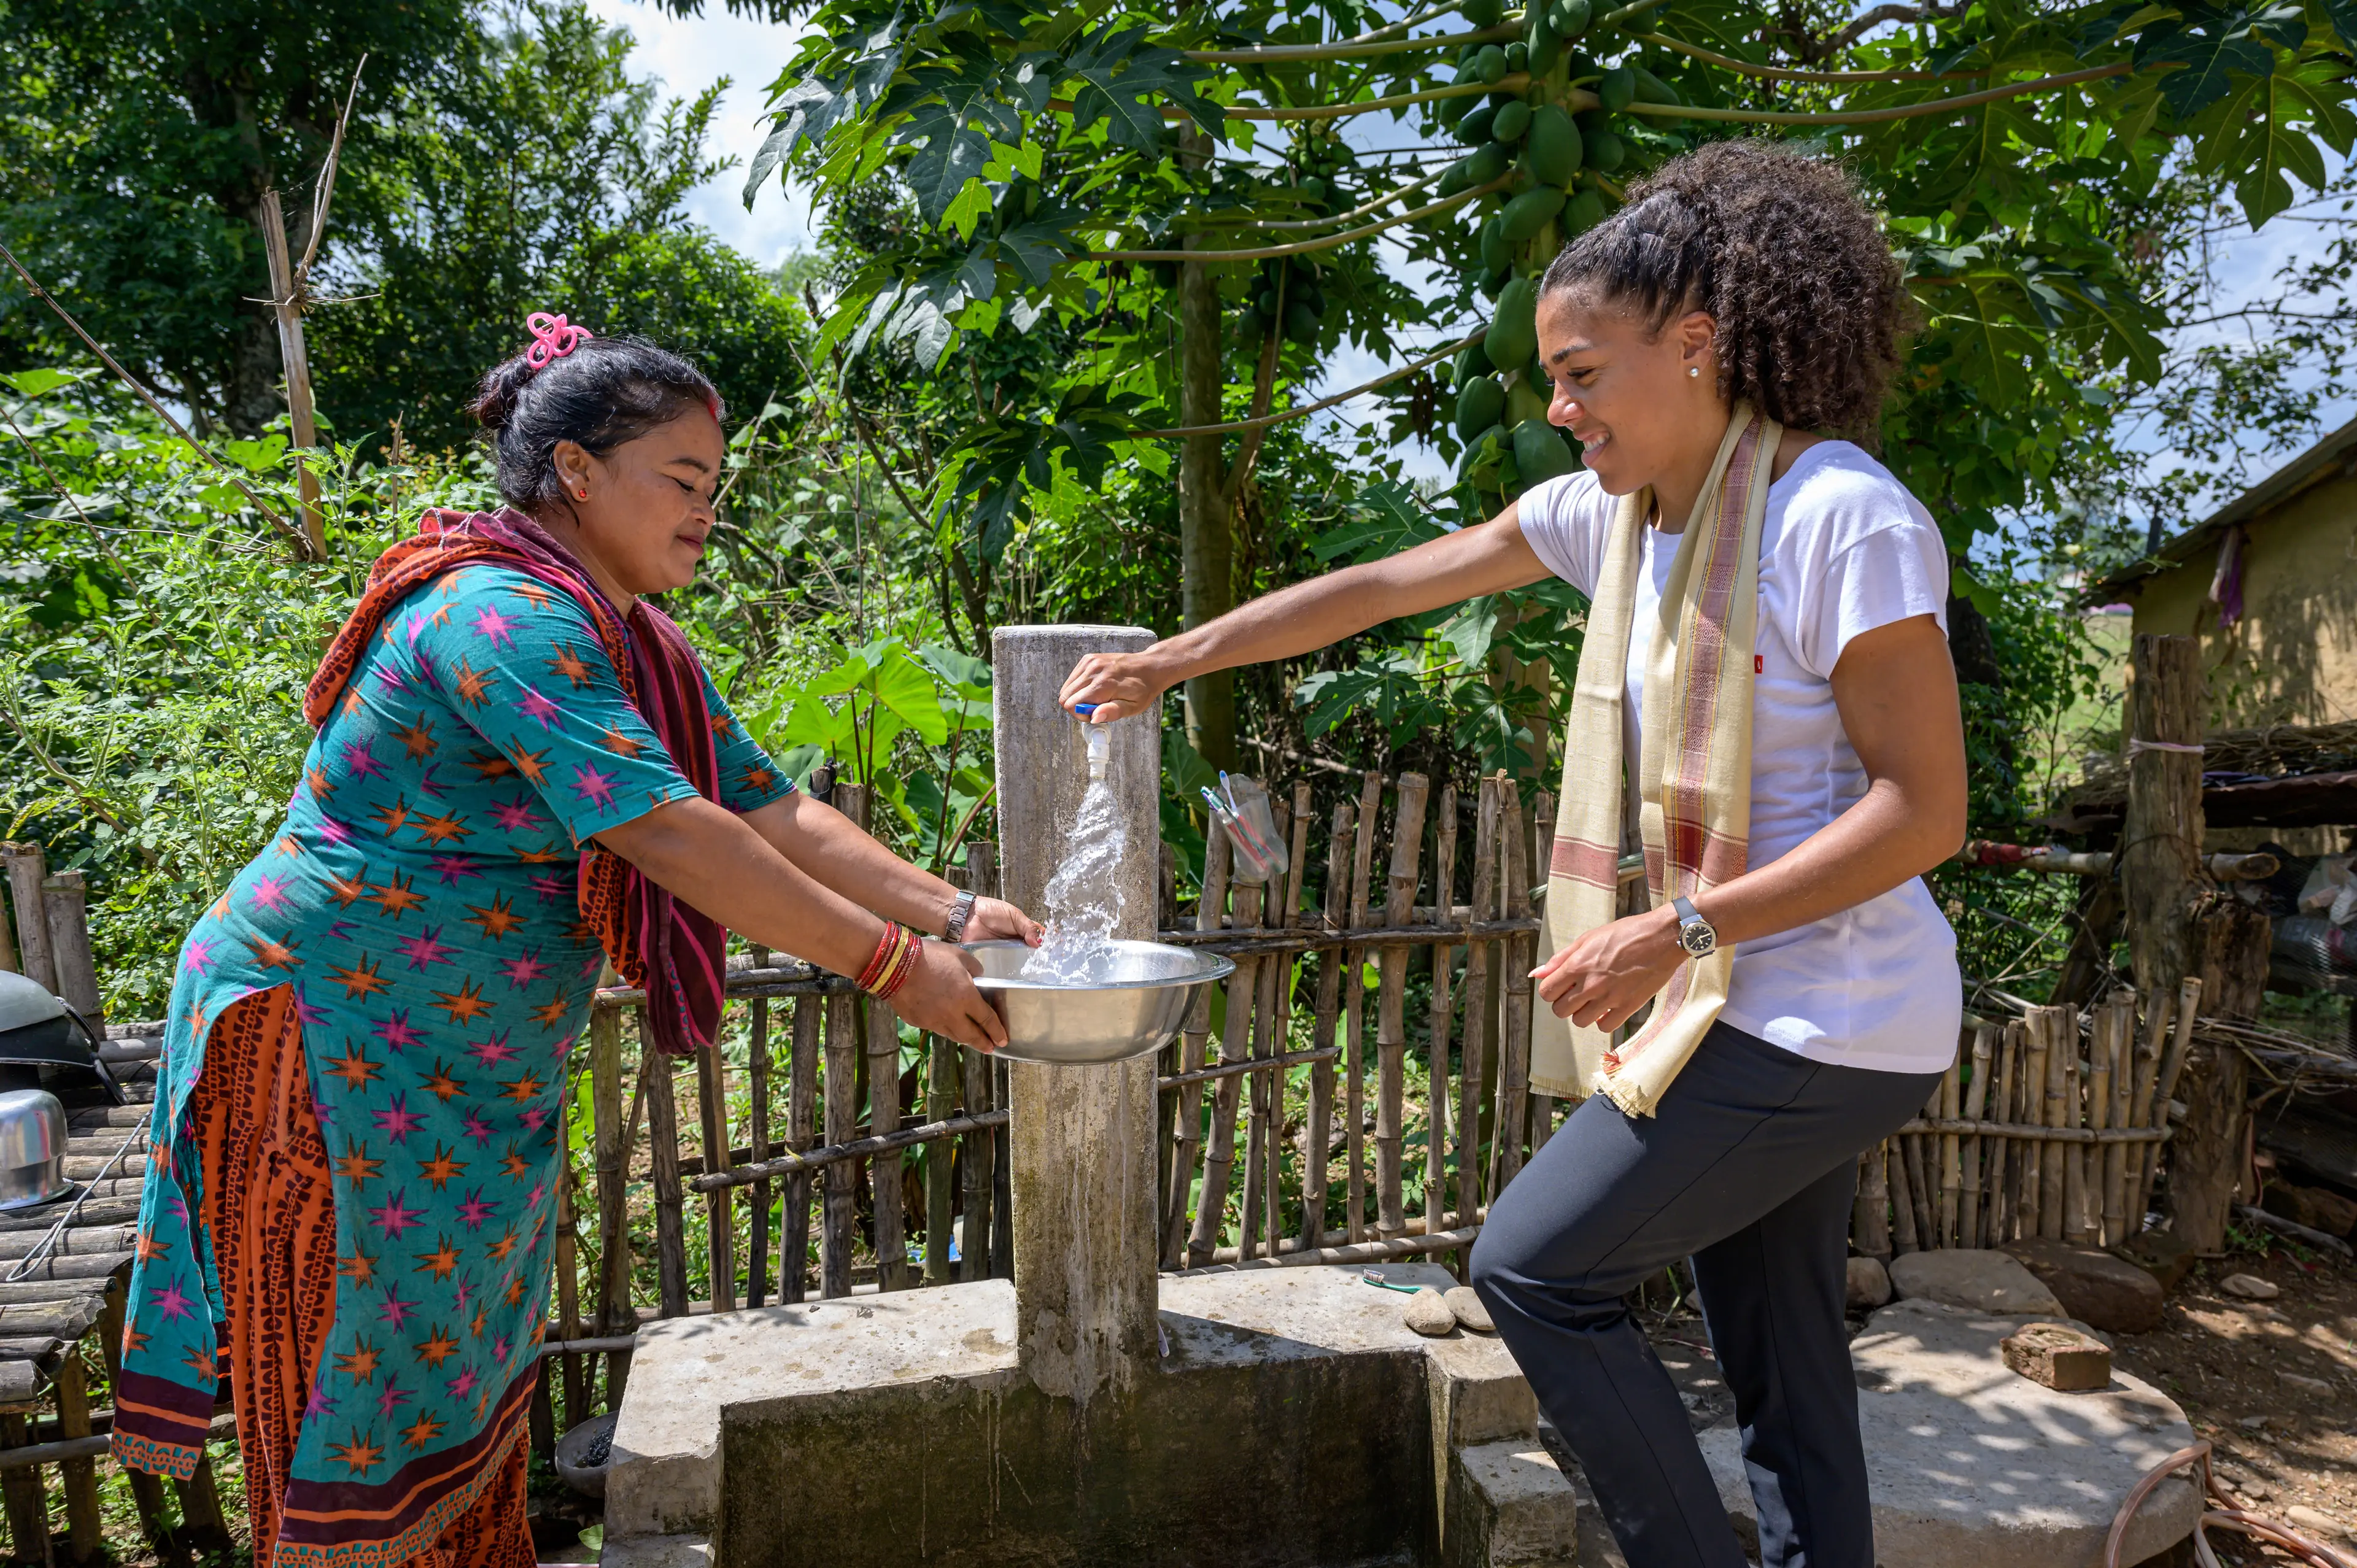 Una donna vestita in modo colorato e Mujinga Kambundji si trovano intorno a un rubinetto d'acqua all'aperto. Mujinga Kambundji tiene una mano sul rubinetto da cui sgorga l'acqua. Sullo sfondo un giardino verde